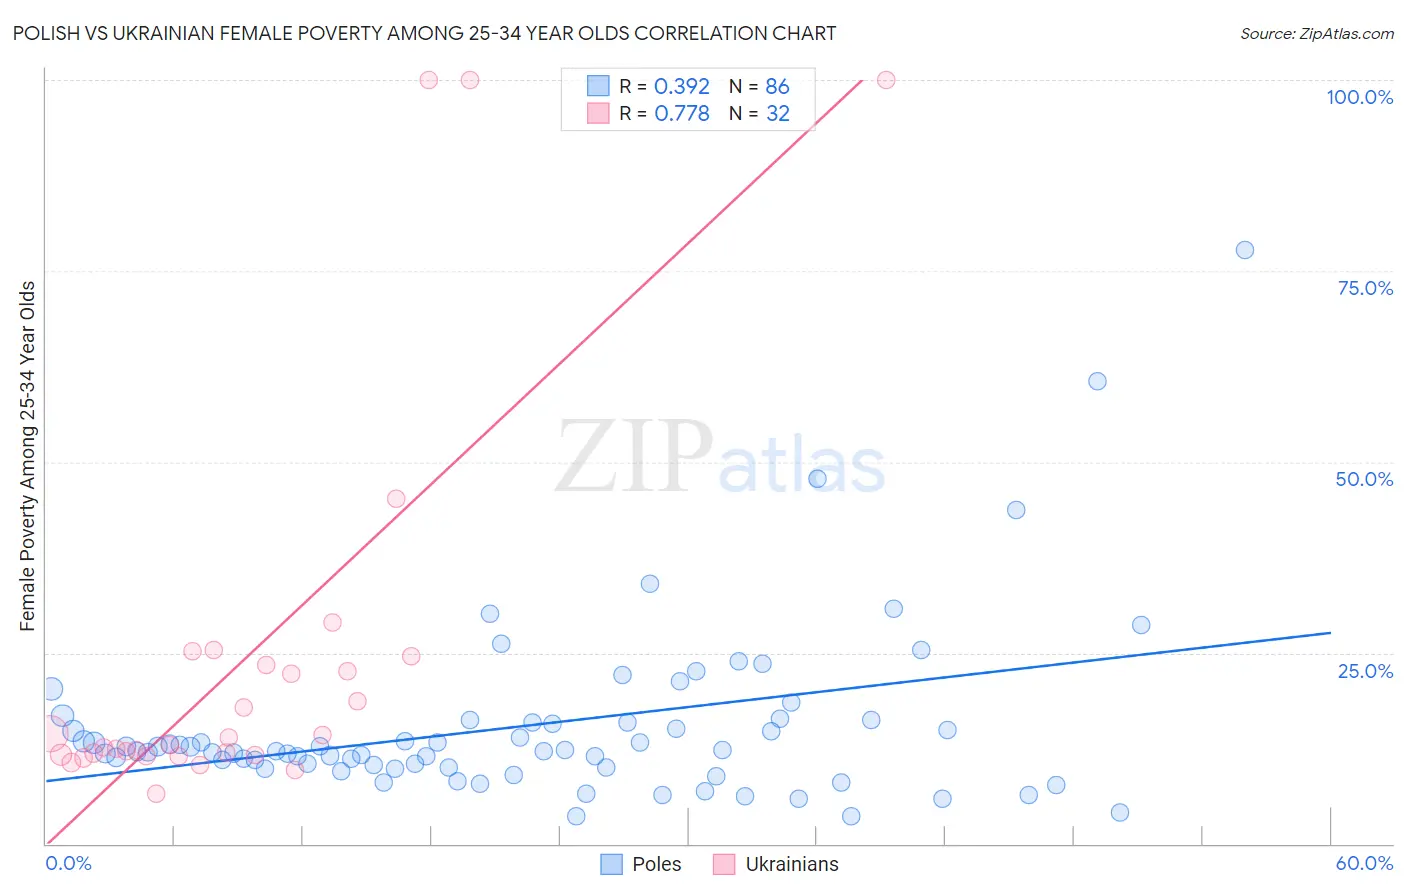 Polish vs Ukrainian Female Poverty Among 25-34 Year Olds